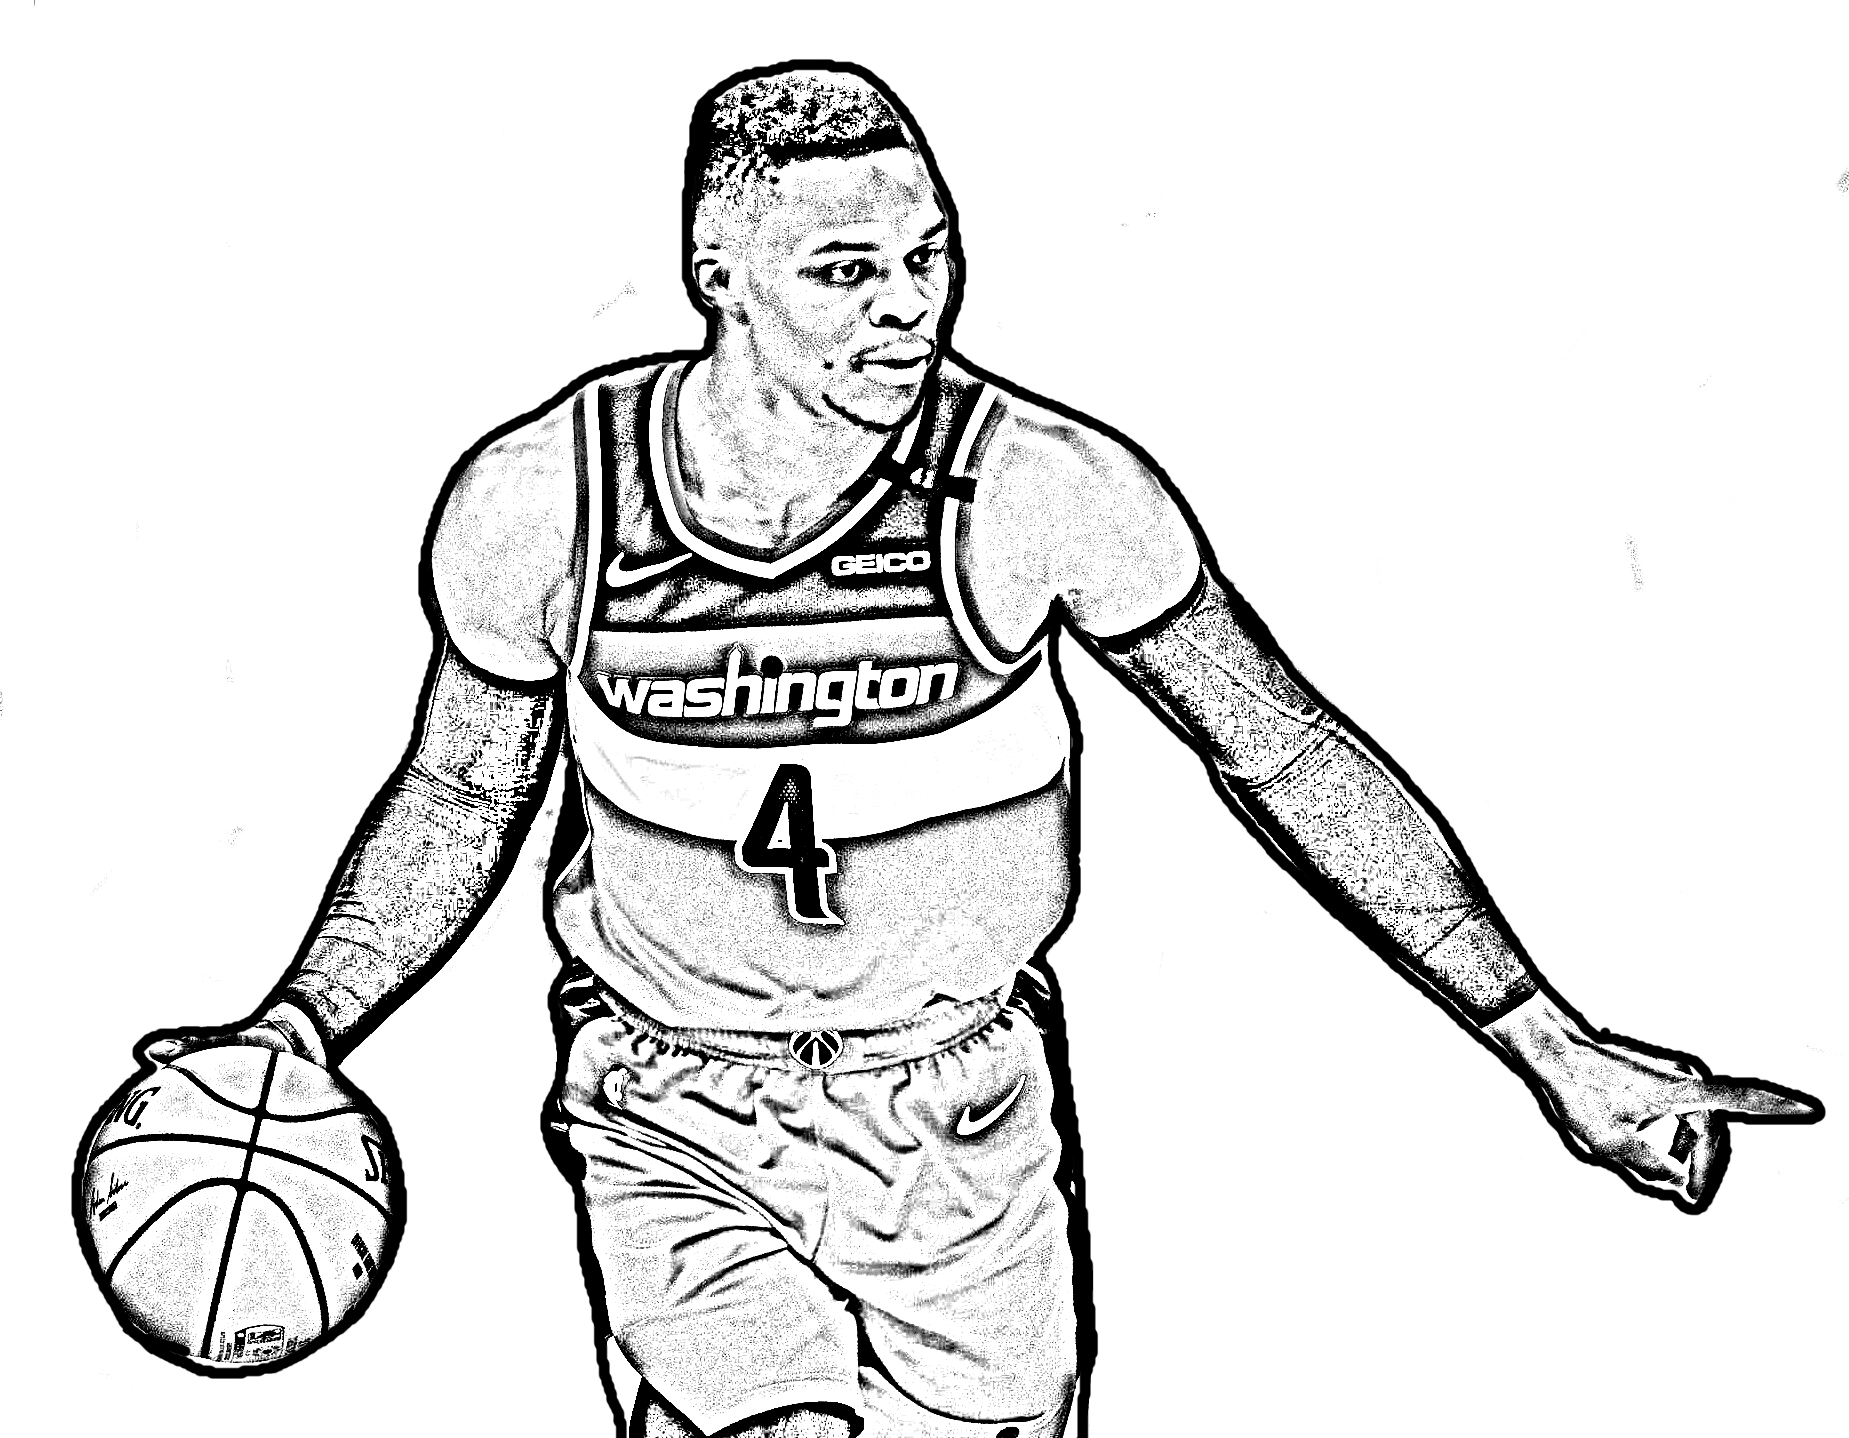 Kolorowanki Russell Westbrook Basket NBA do wydrukowania i pokolorowania